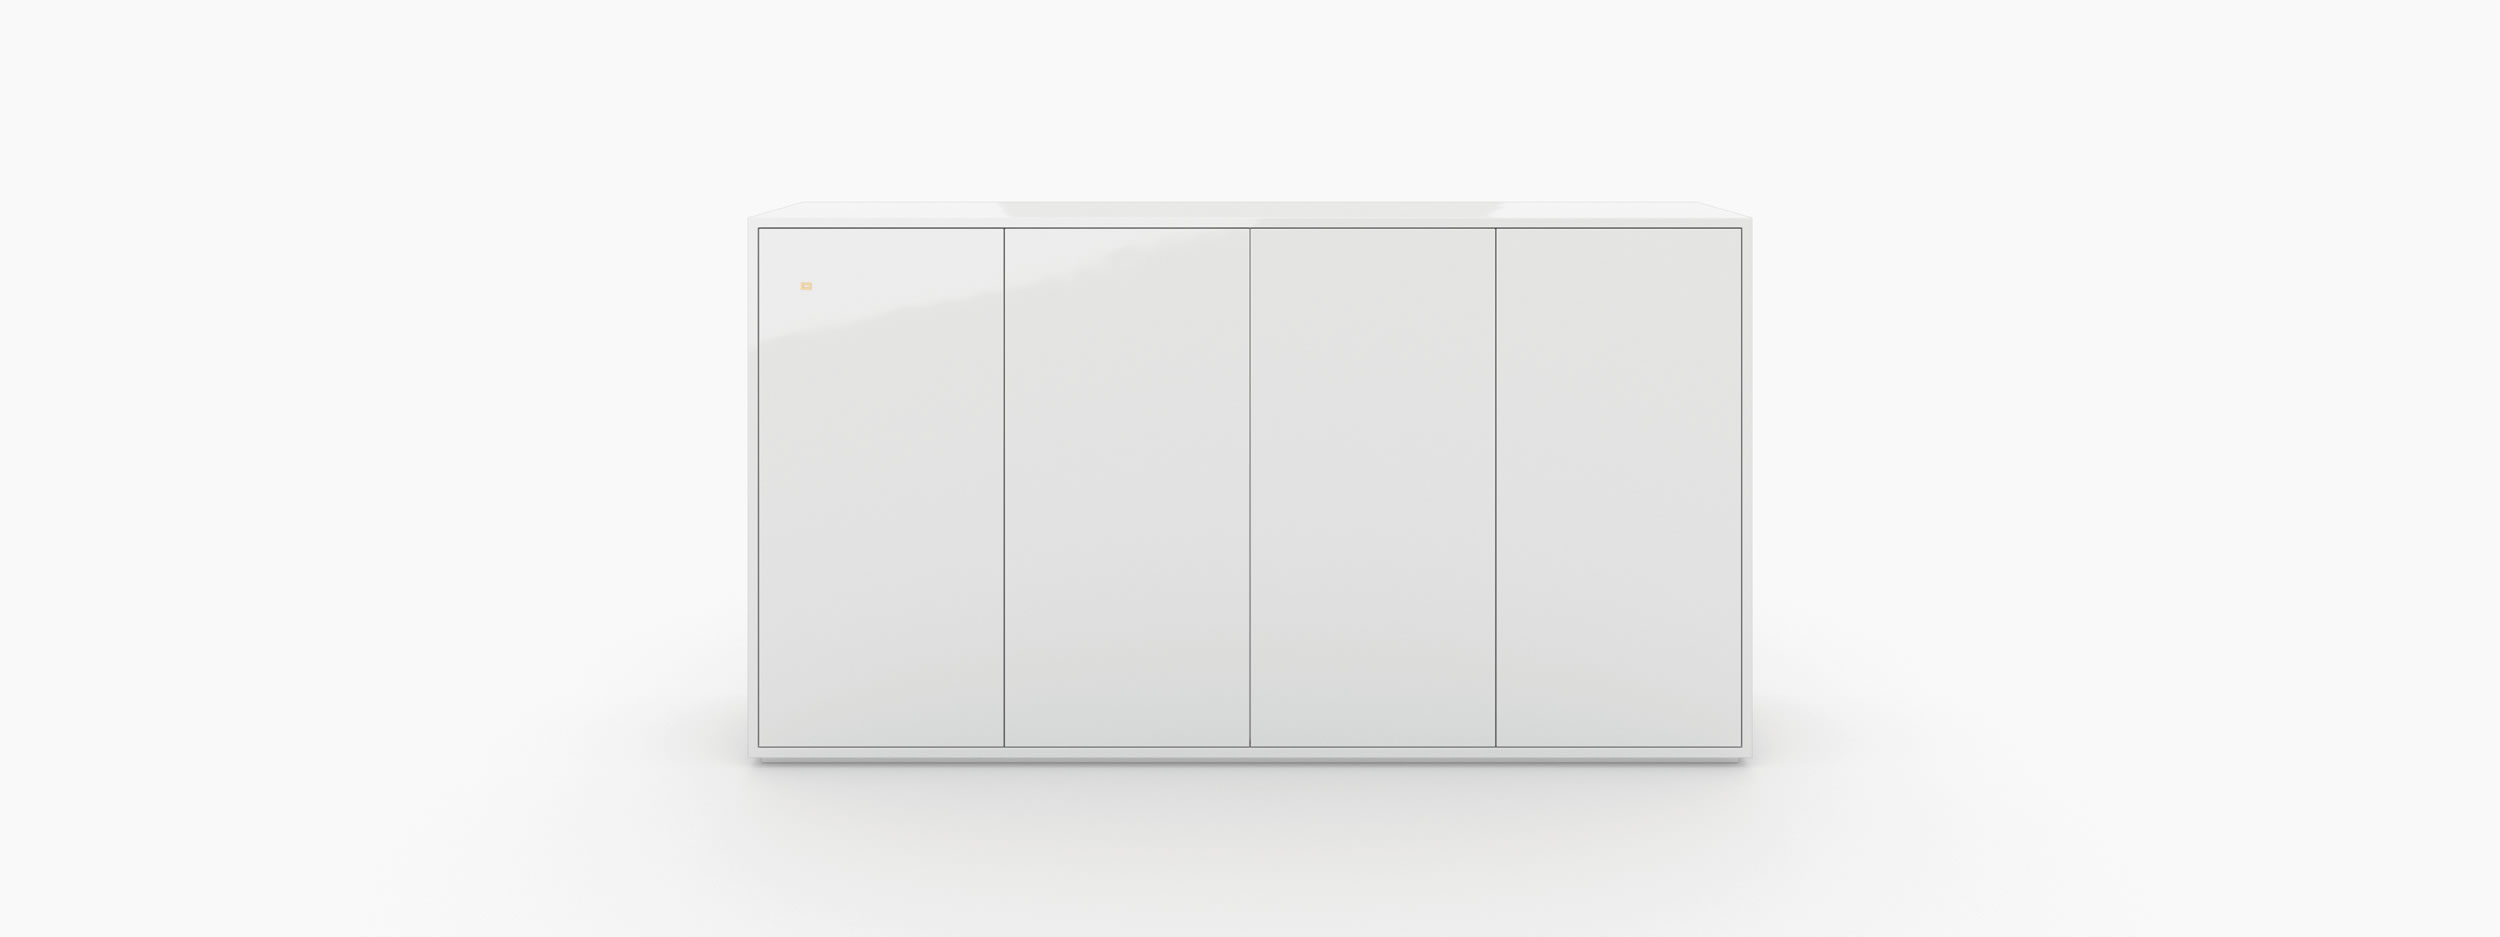 Sideboard quader weiss all white Buero art furniture Sideboards FS 64 FELIX SCHWAKE RECHTECK